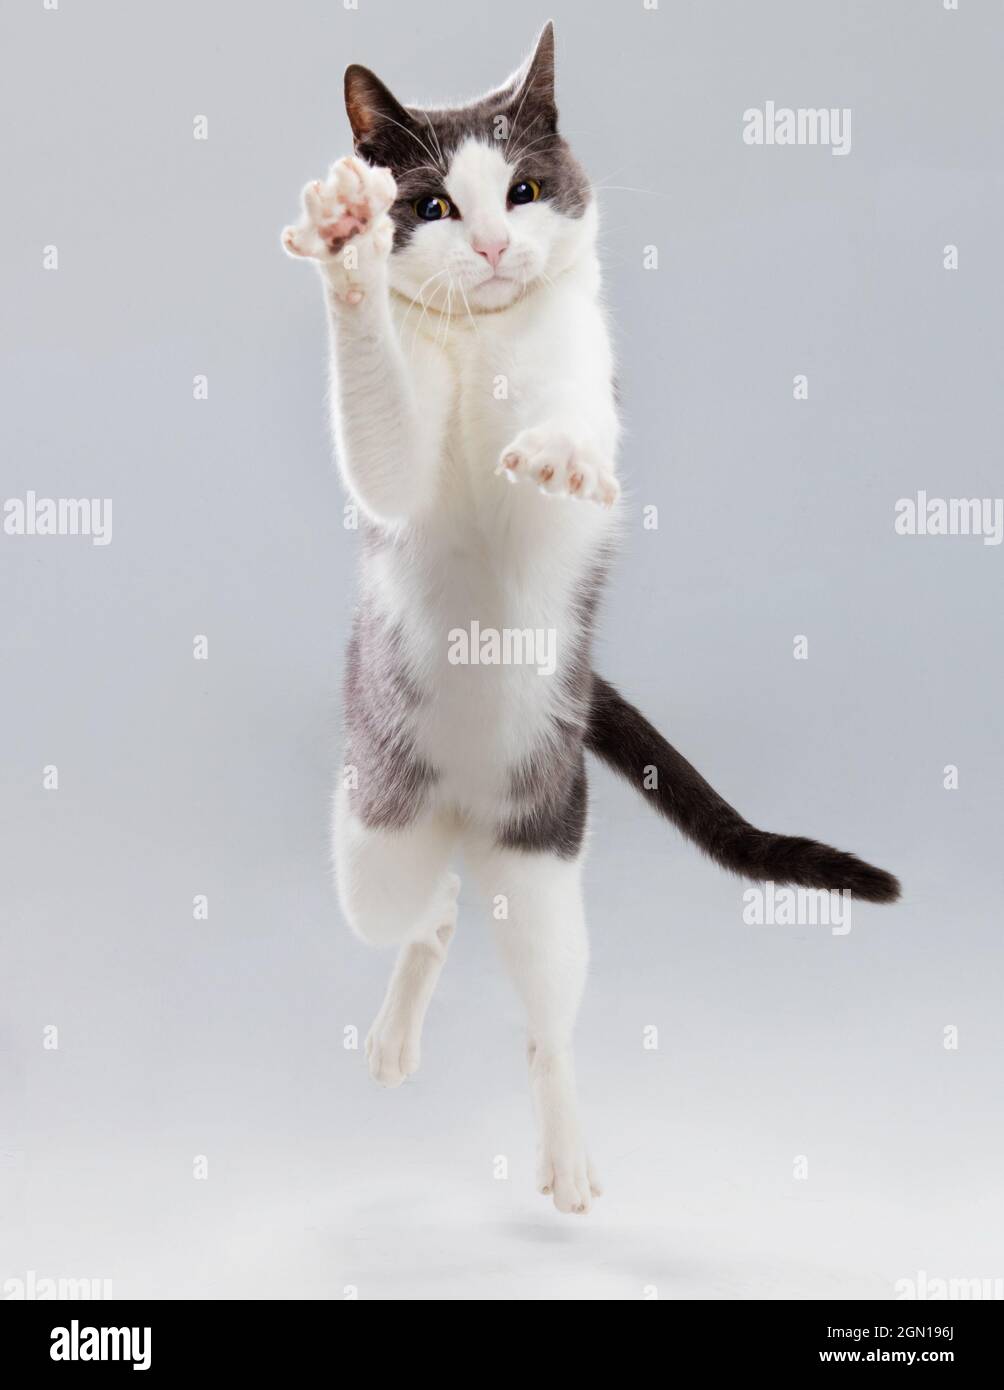 Foto de estudio de un gato gris y blanco cayendo hacia la cámara con una expresión concentrada. Foto de stock